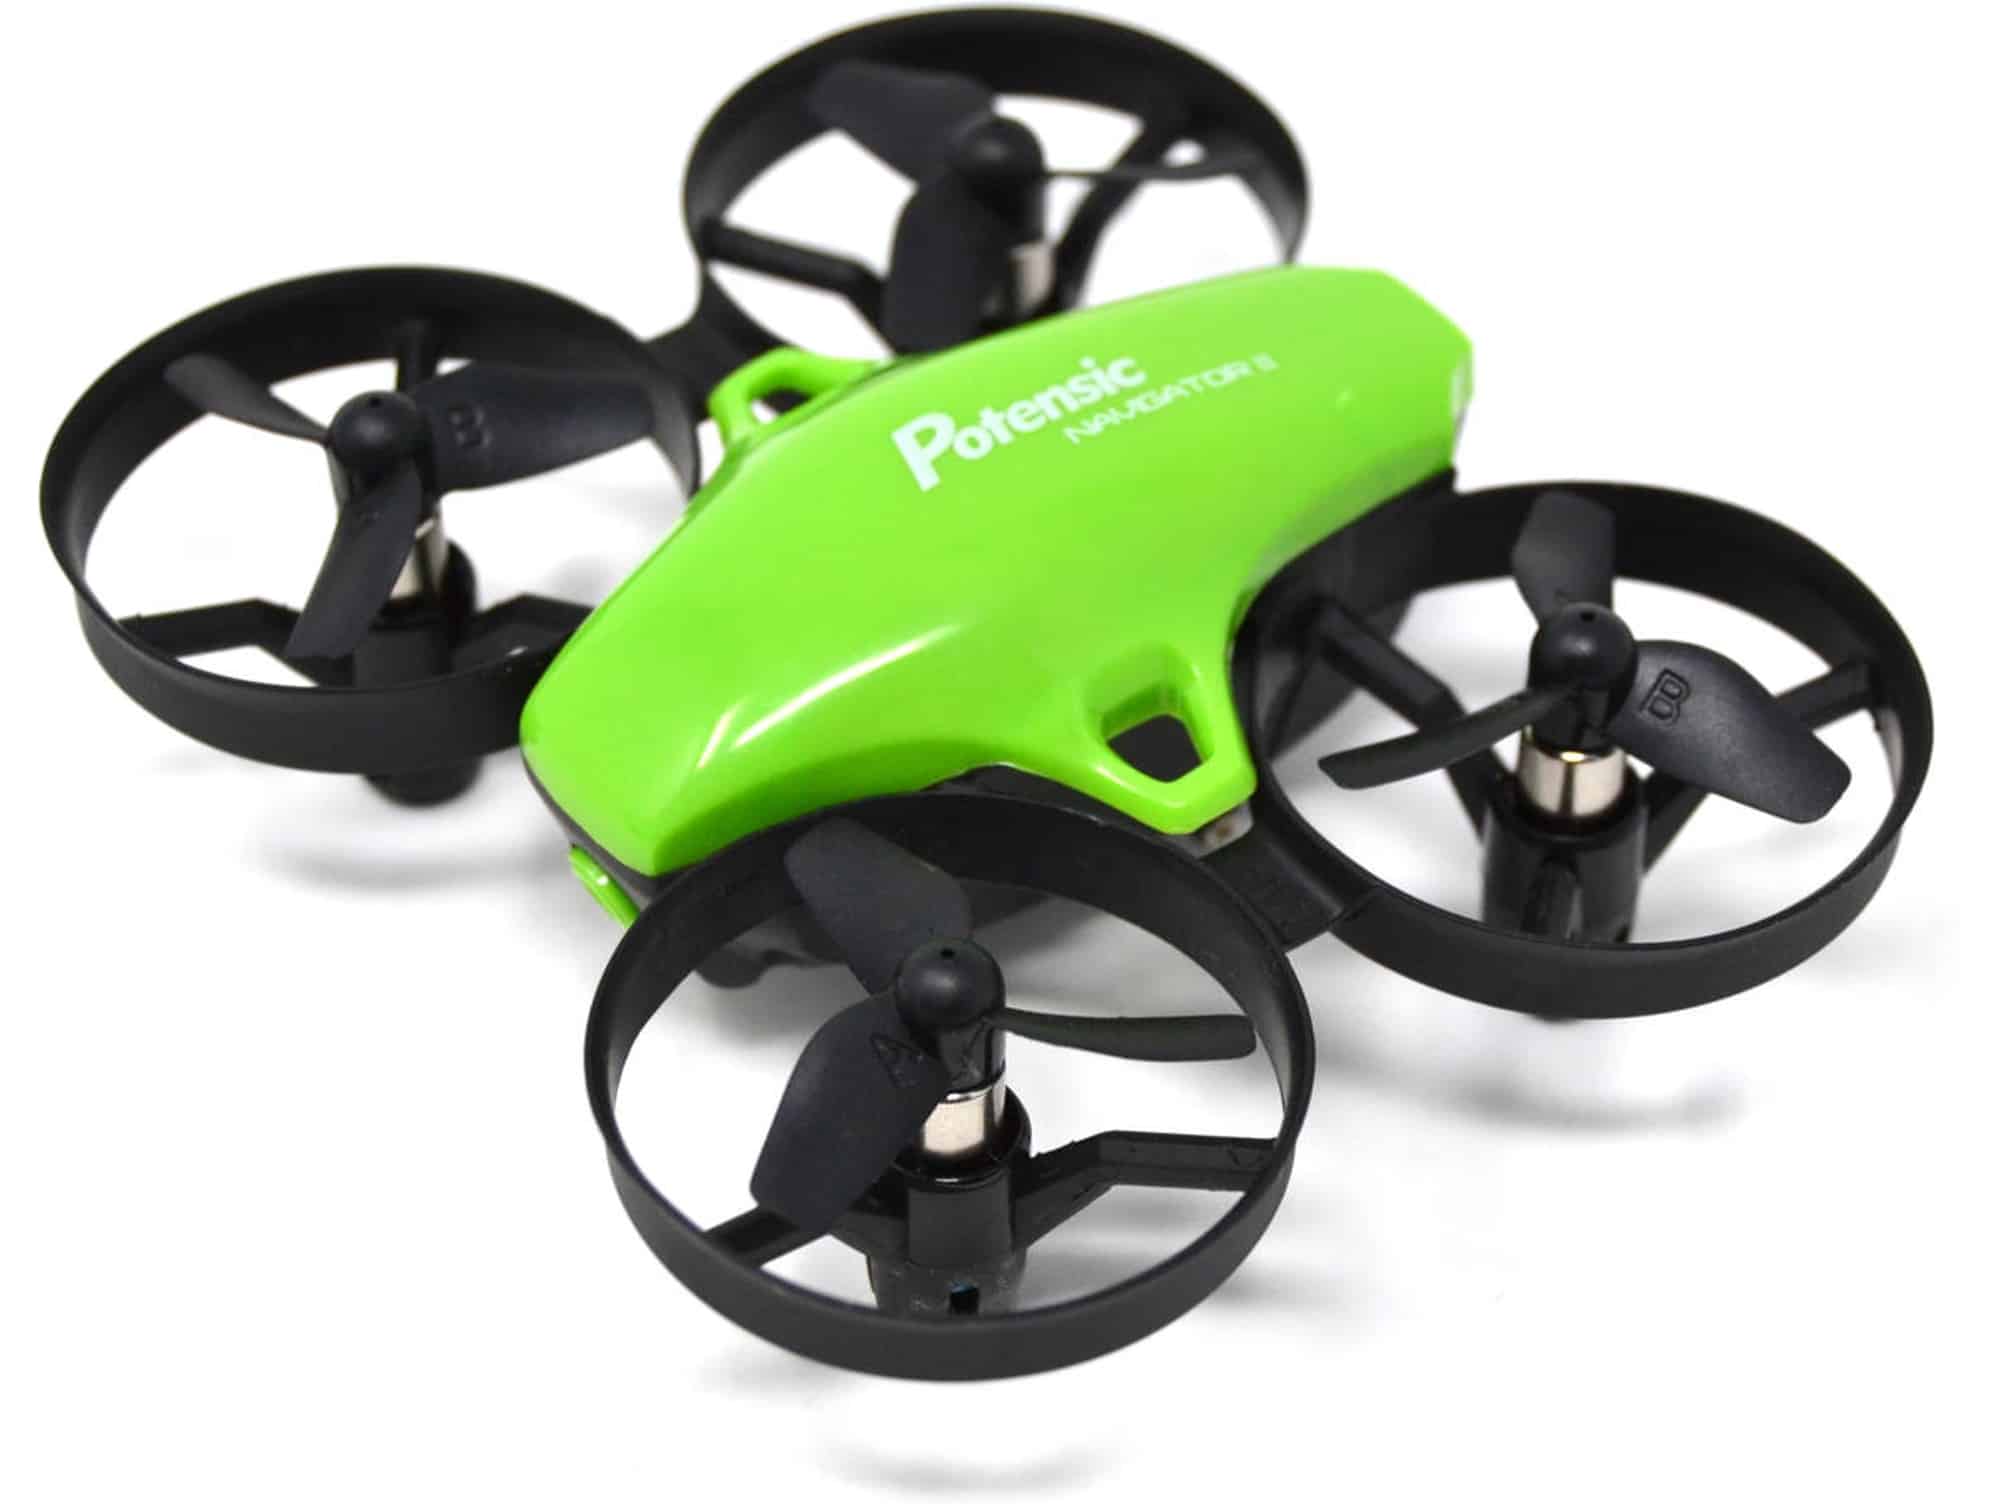 Potensic - A20 Mini Drone Vert pour Enfant et Débutants